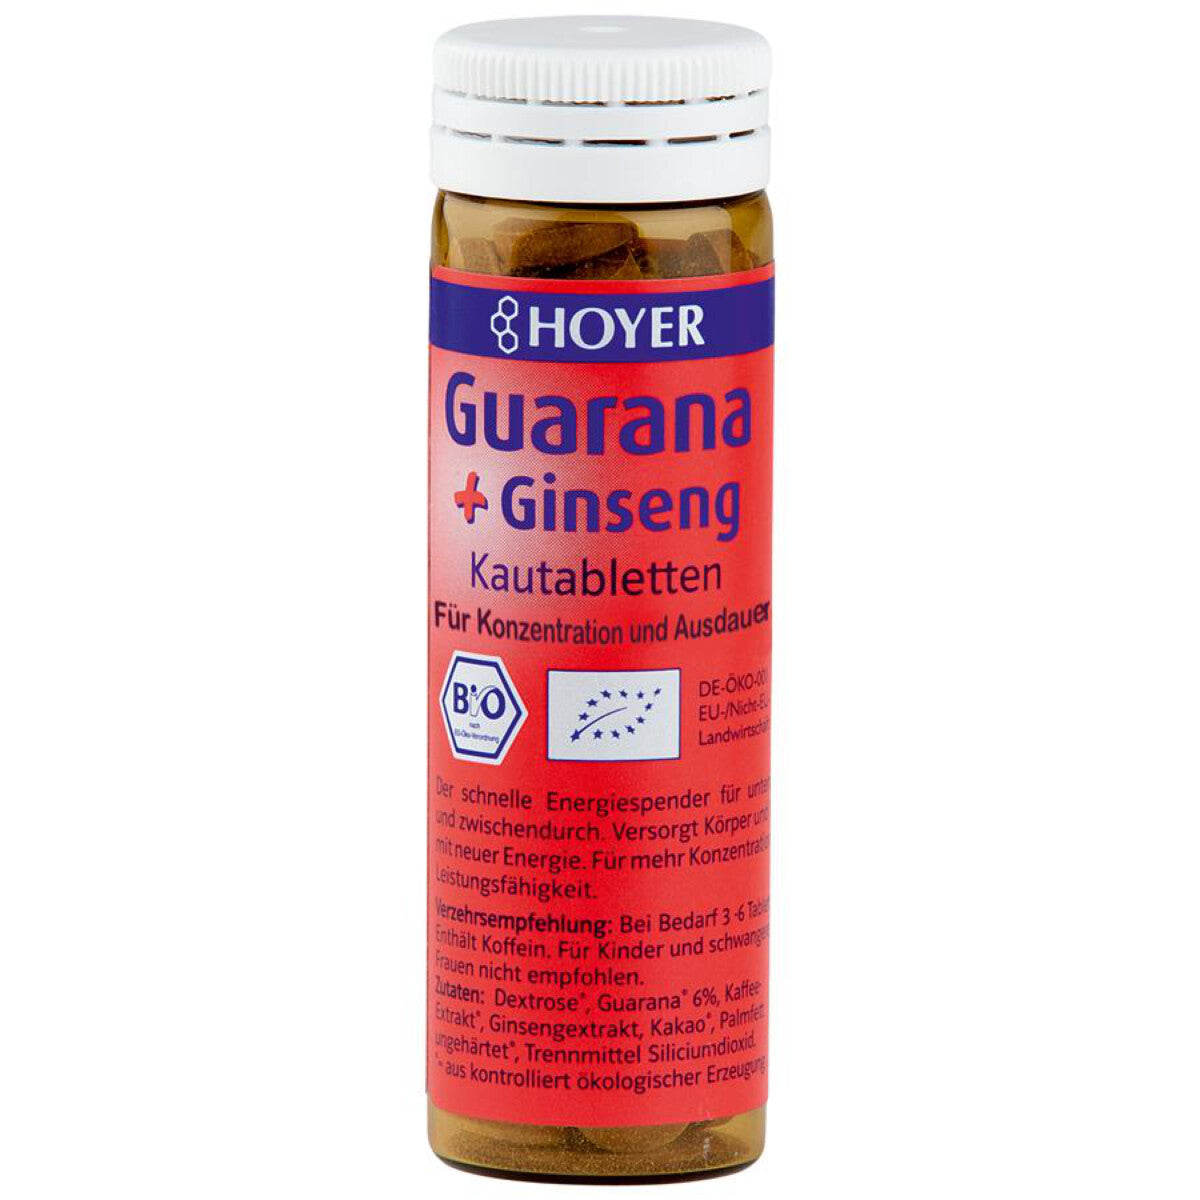 HOYER Guarana & Ginseng Kautabletten - 60 Stk.